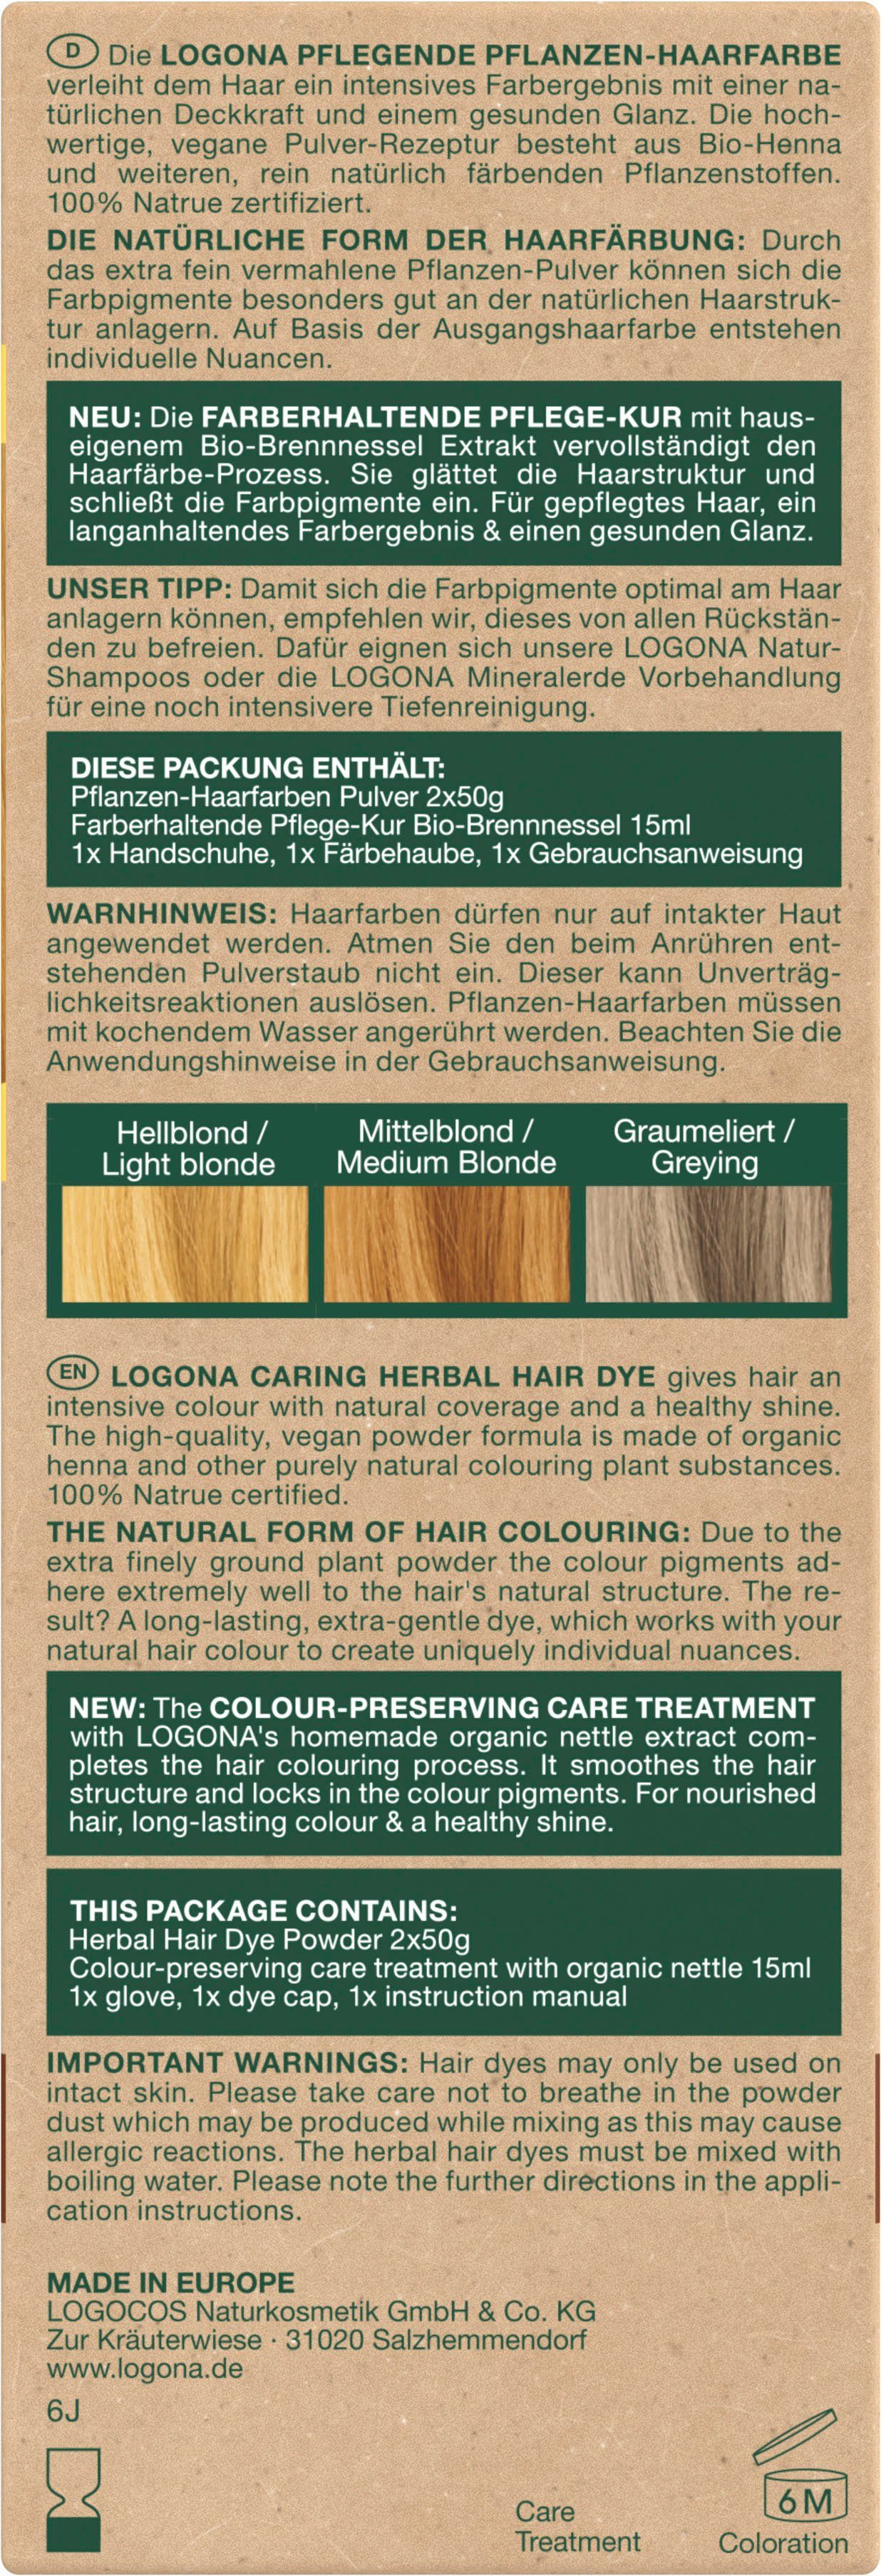 Goldblond 01 Pflanzen-Haarfarbe LOGONA Haarfarbe Pulver